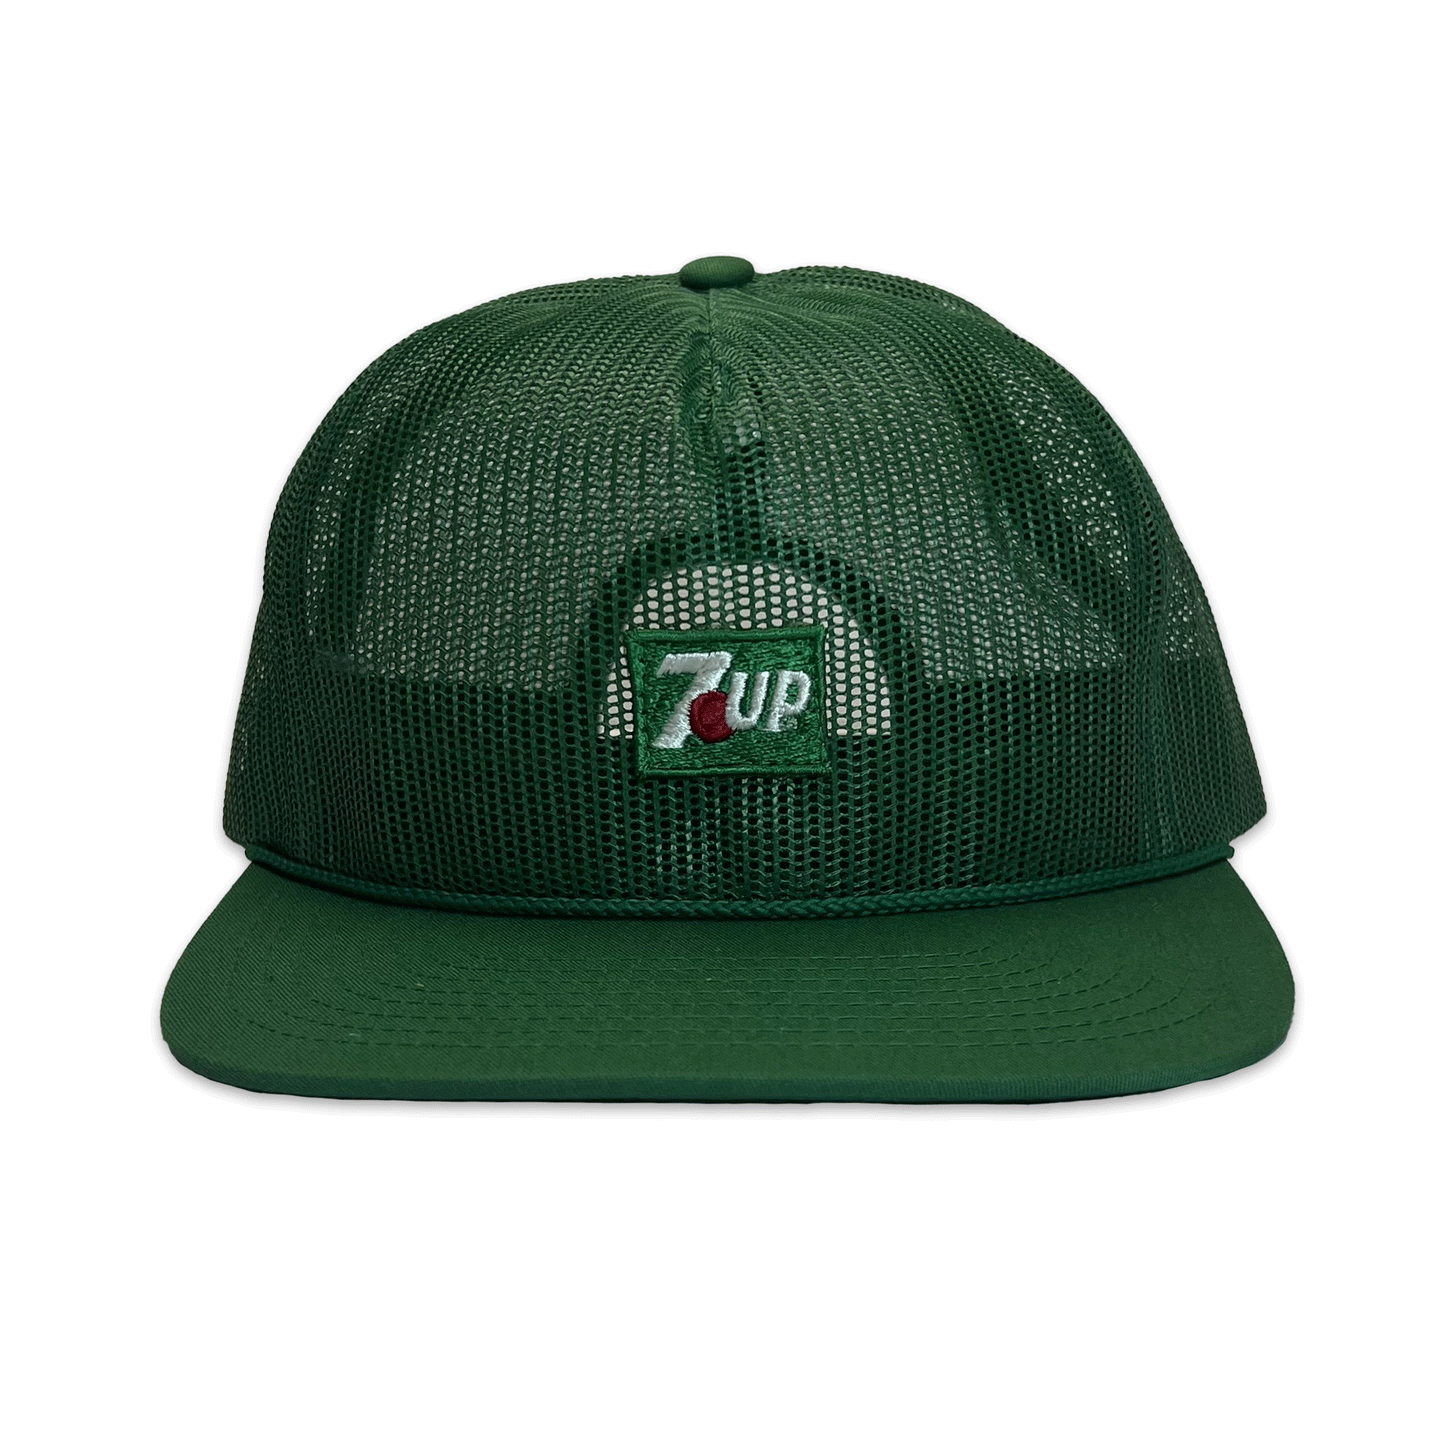 7-UP. Full Mesh Hat. Green.